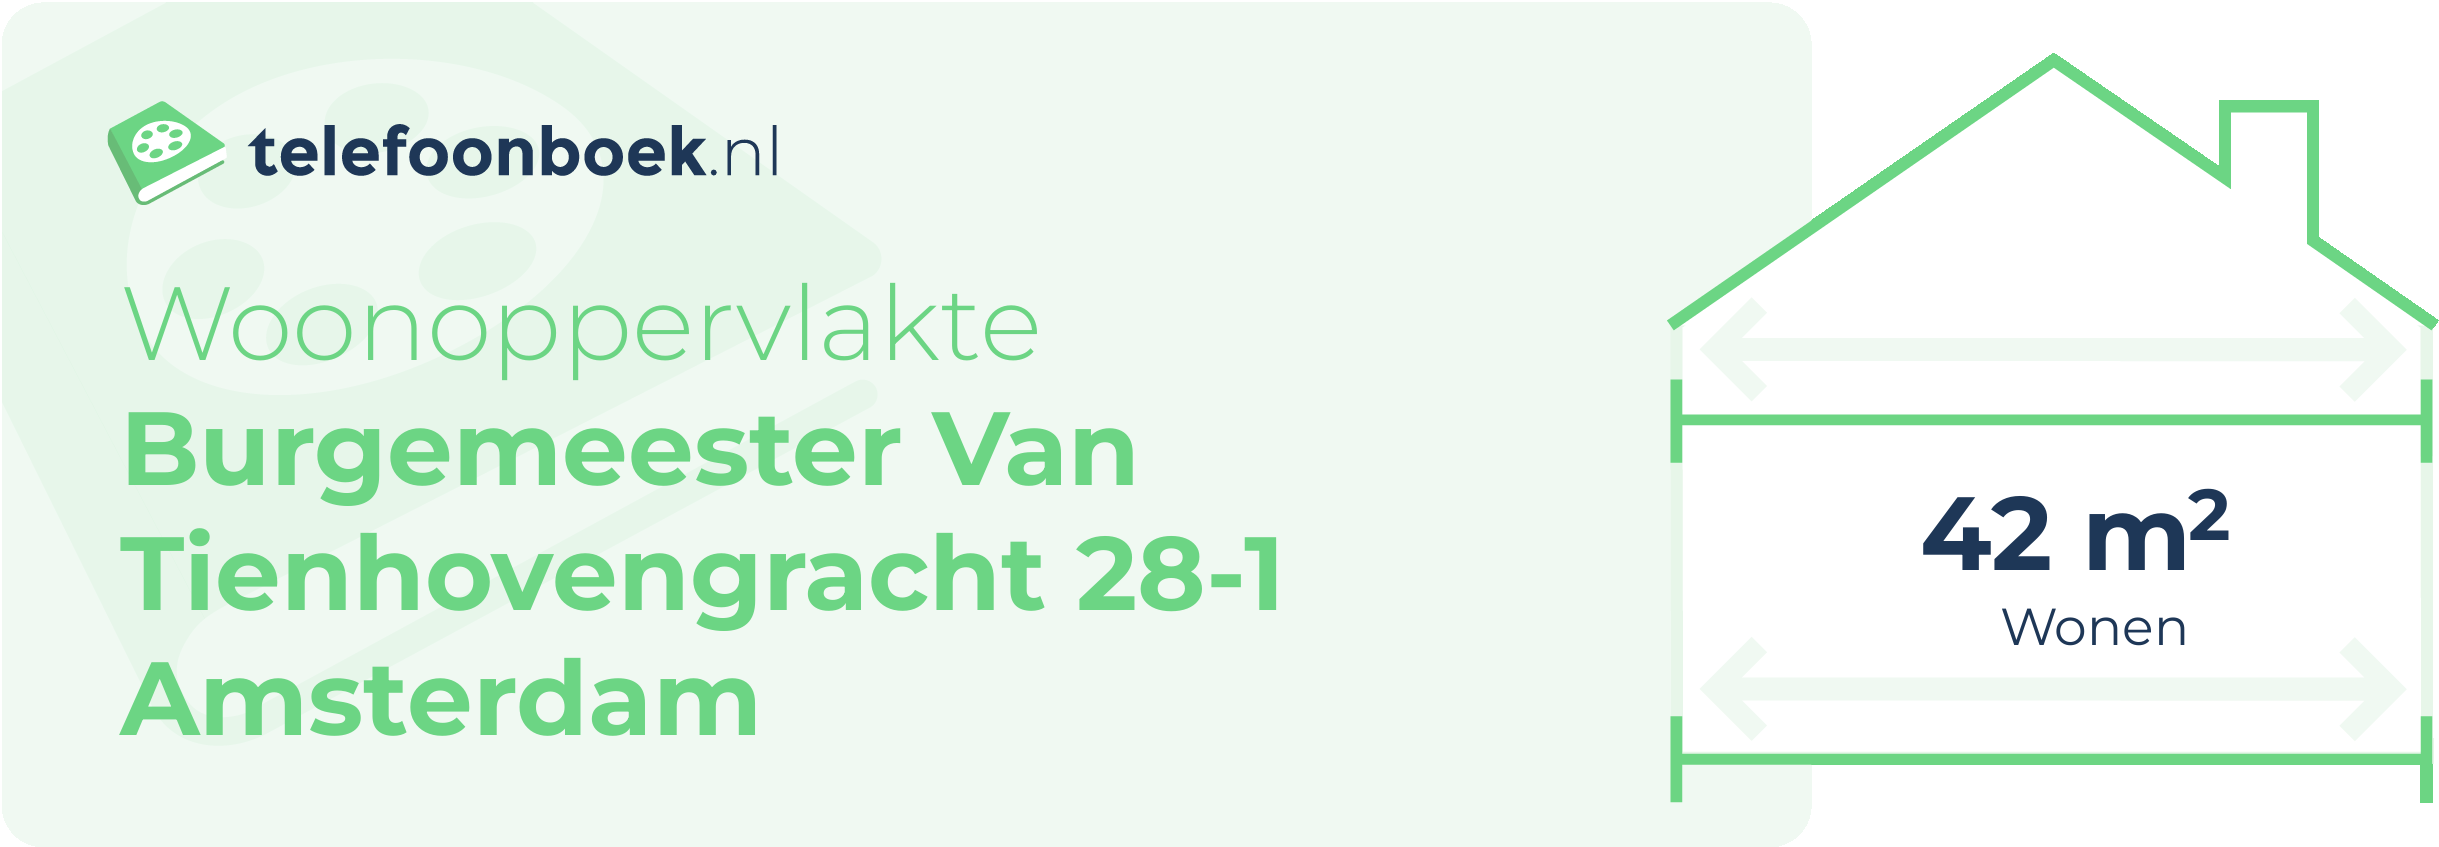 Woonoppervlakte Burgemeester Van Tienhovengracht 28-1 Amsterdam